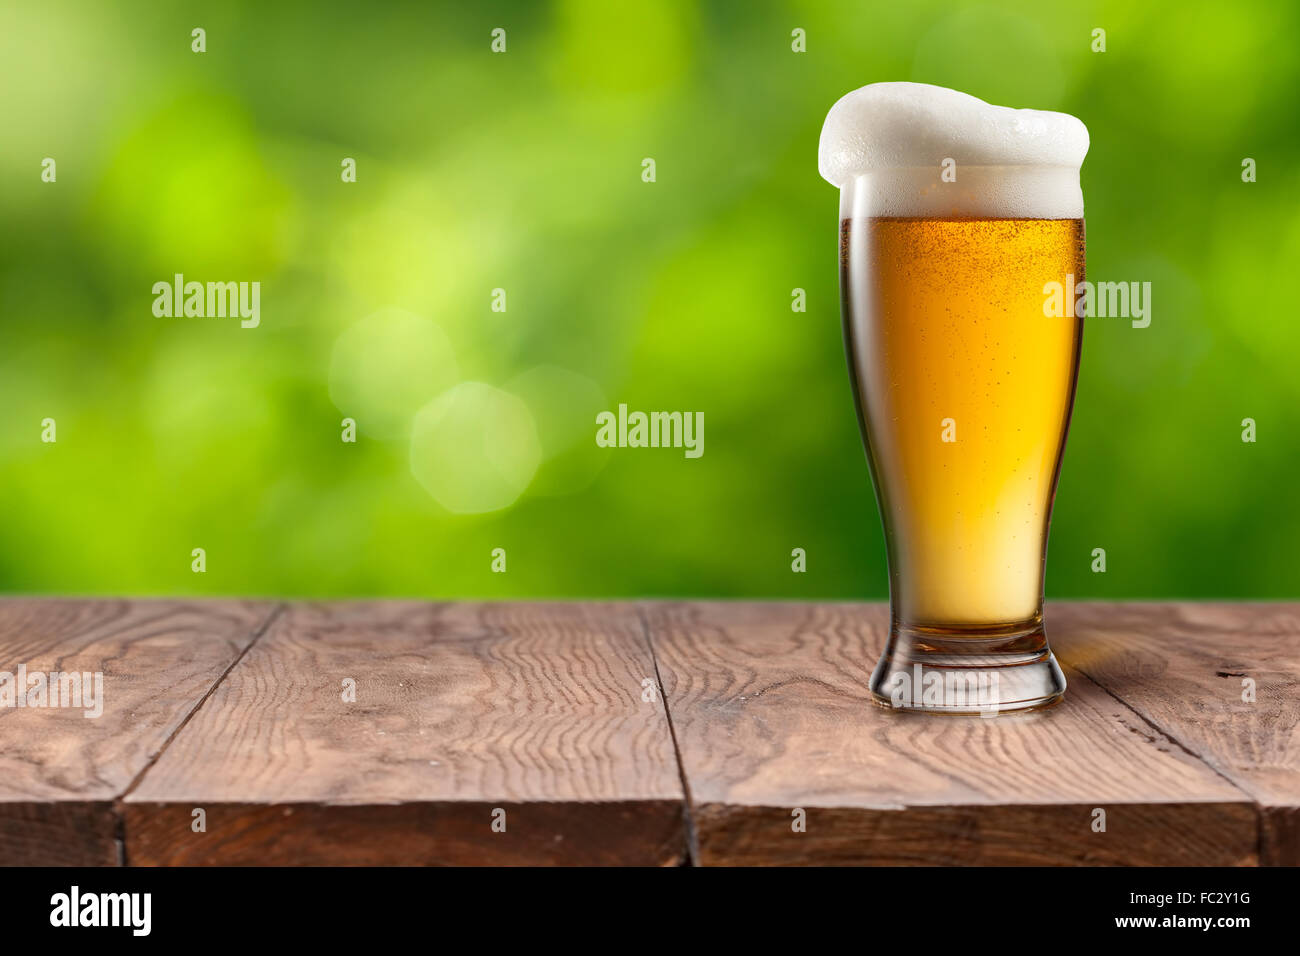 La bière dans le verre sur la table en bois contre green Banque D'Images